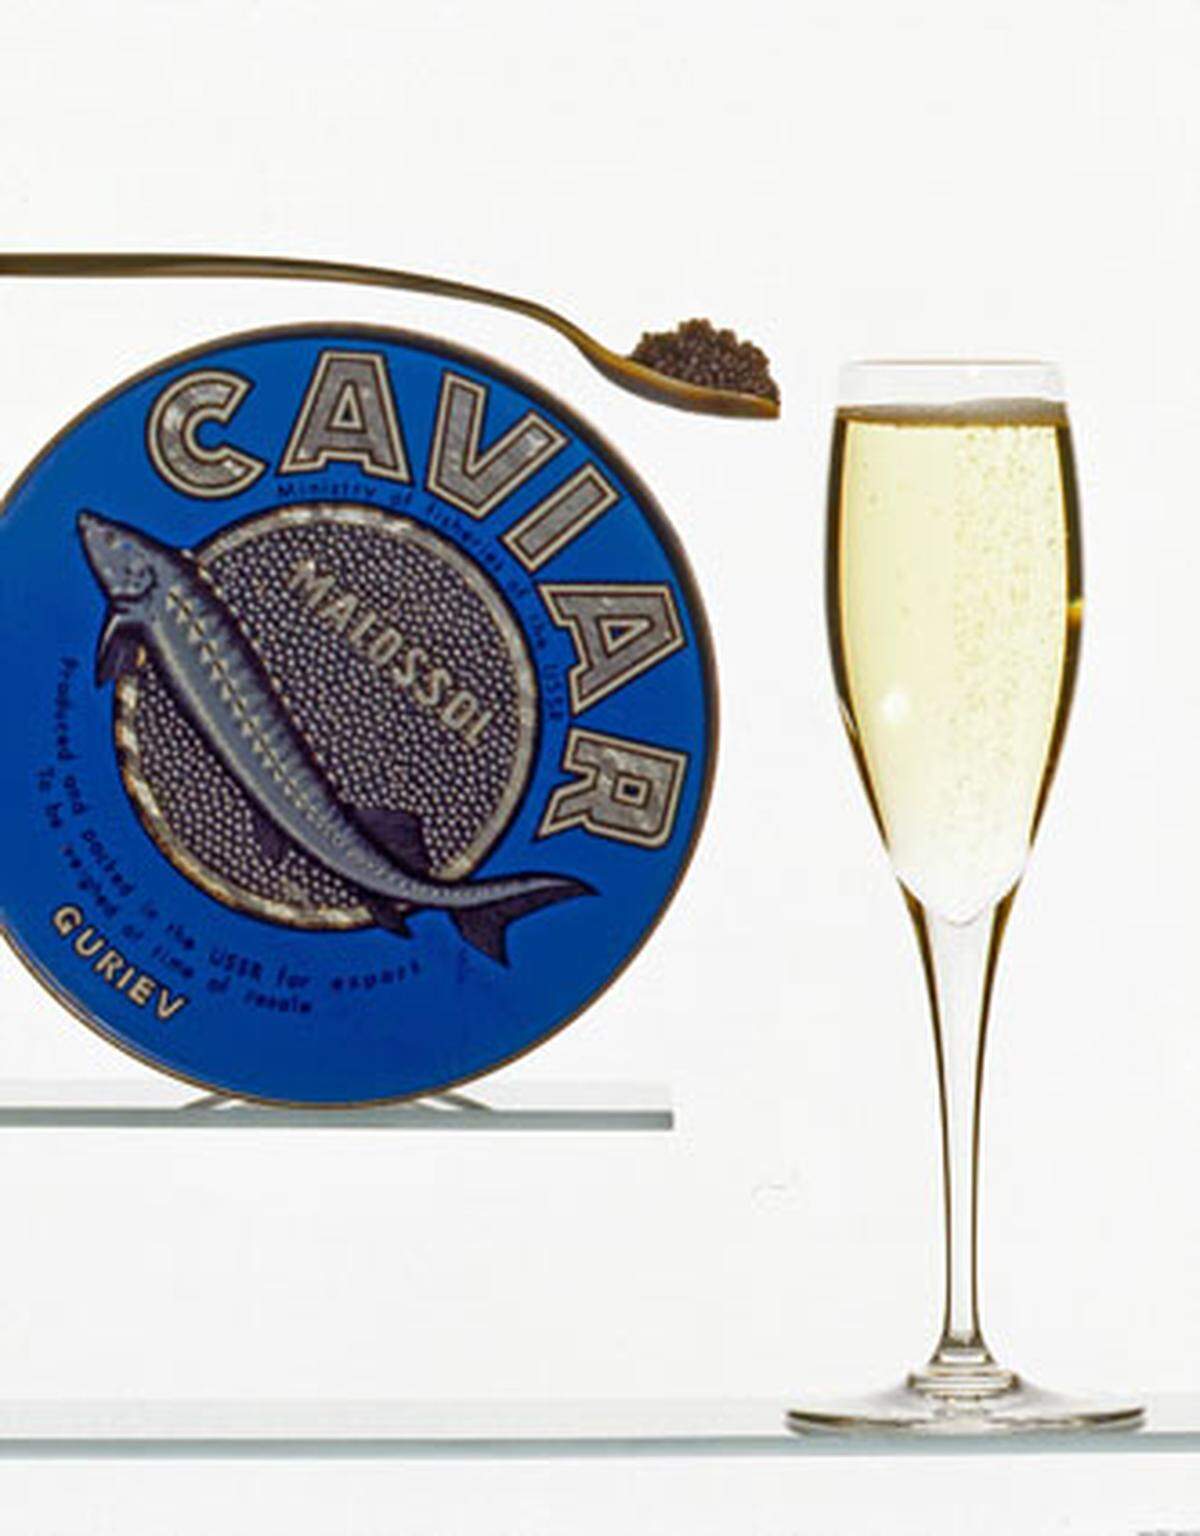 Die gängigen Luxus-Kombinationen wie Champagner zu Kaviar sind zwar nicht vom Aussterben bedroht, weichen jedoch zunehmend anderen Paarungen. Sogar zur Blunzen kann man Champagner trinken, meinte zumindest Carol Duval-Leroy erst unlängst zum "Schaufenster". Alle Fotos: Comité Interprofessionnel du Vin de Champagne (CIVC)